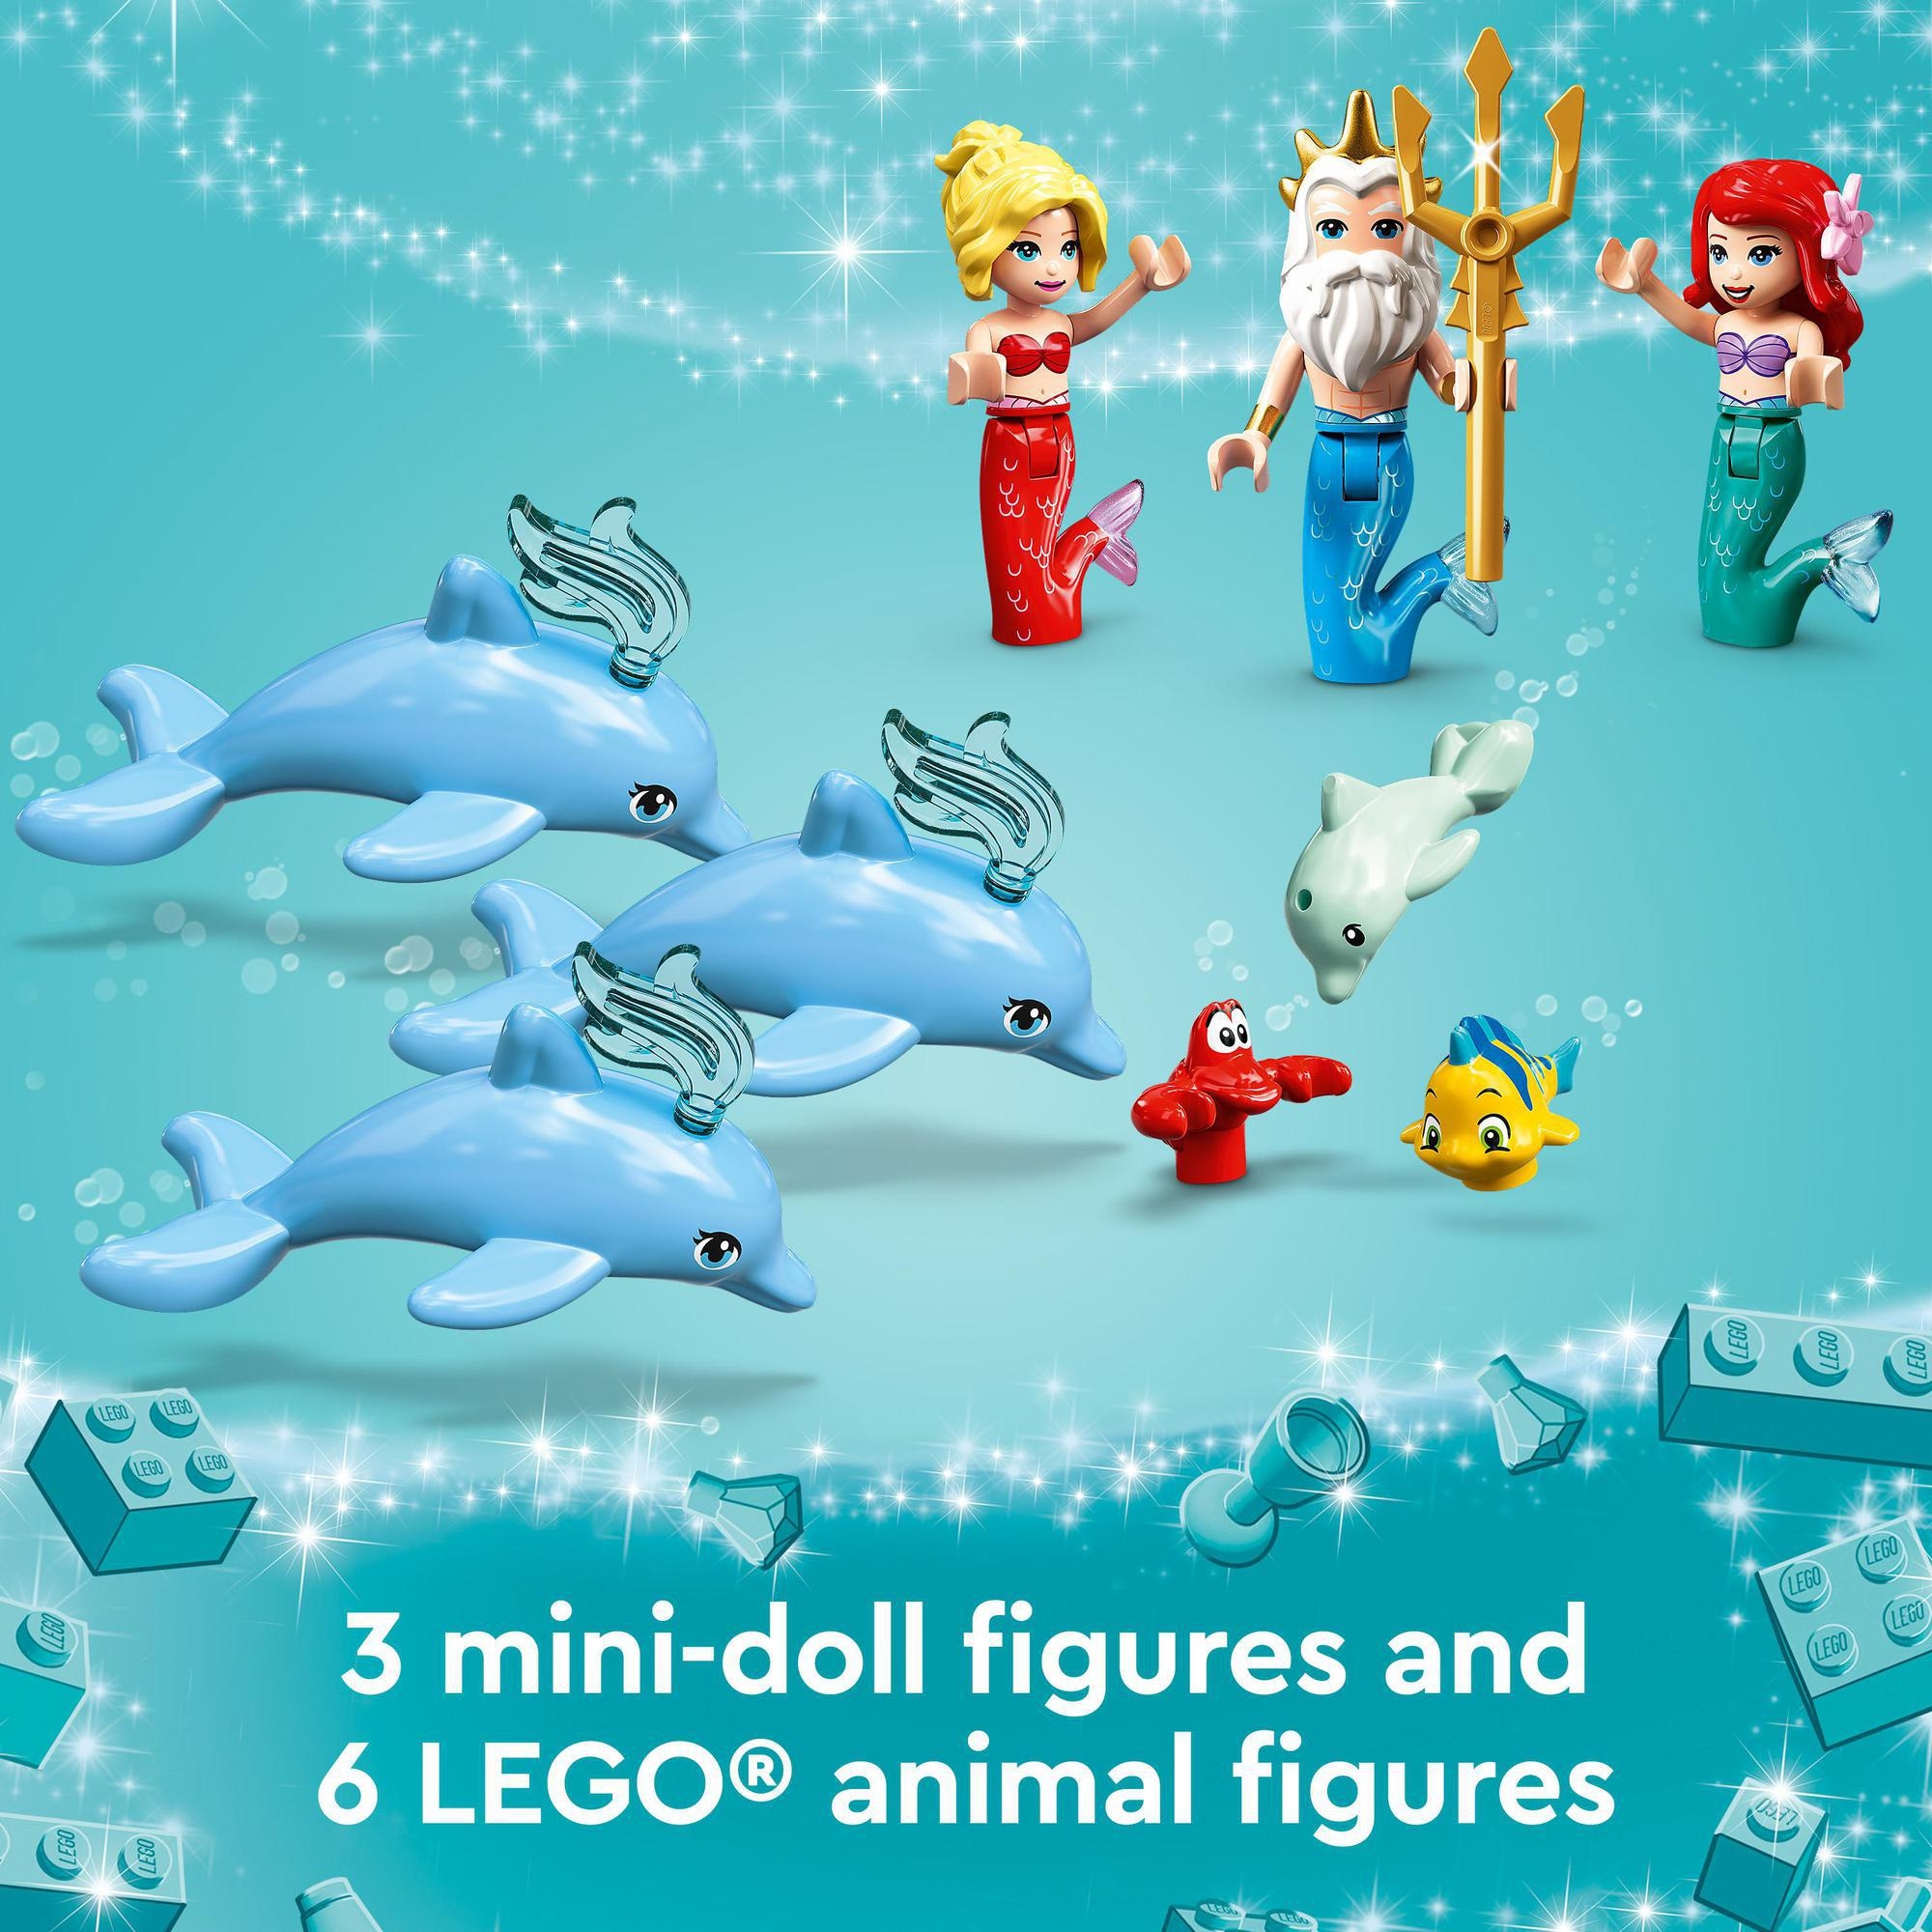 LEGO Disney Princess 43207 Lâu Đài  Của Công Chúa Ariel (498 chi tiết)